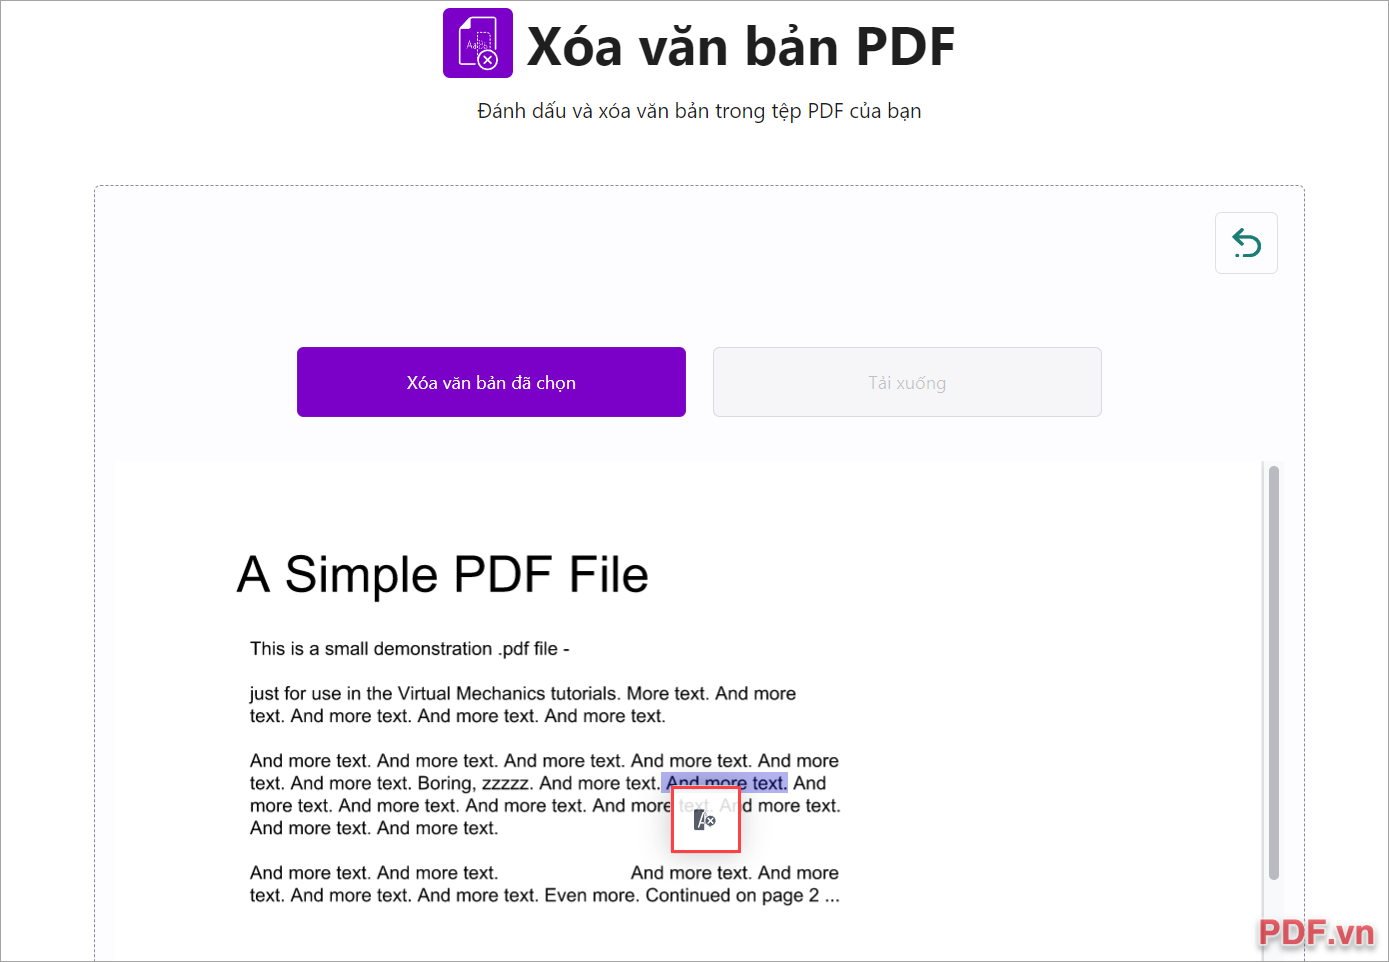 Chọn toàn bộ các vùng văn bản cần xóa trong file PDF